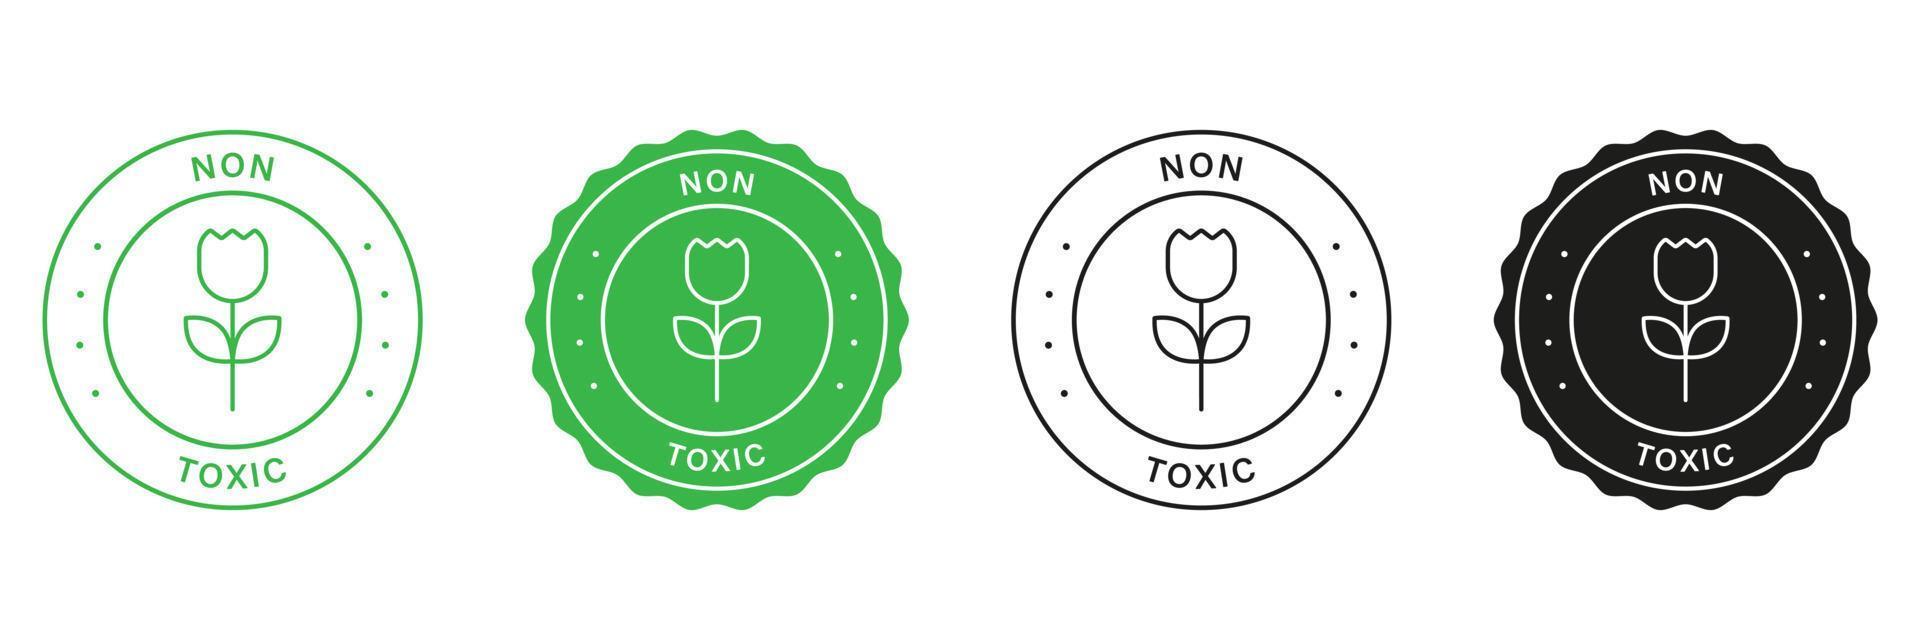 säker produkt stämpel uppsättning. giftfri symbol. fri kemisk ikoner. grön och svart etiketter med ekologisk garanti. eco rena klistermärke organisk säkerhet giftfri tecken. isolerat vektor illustration.